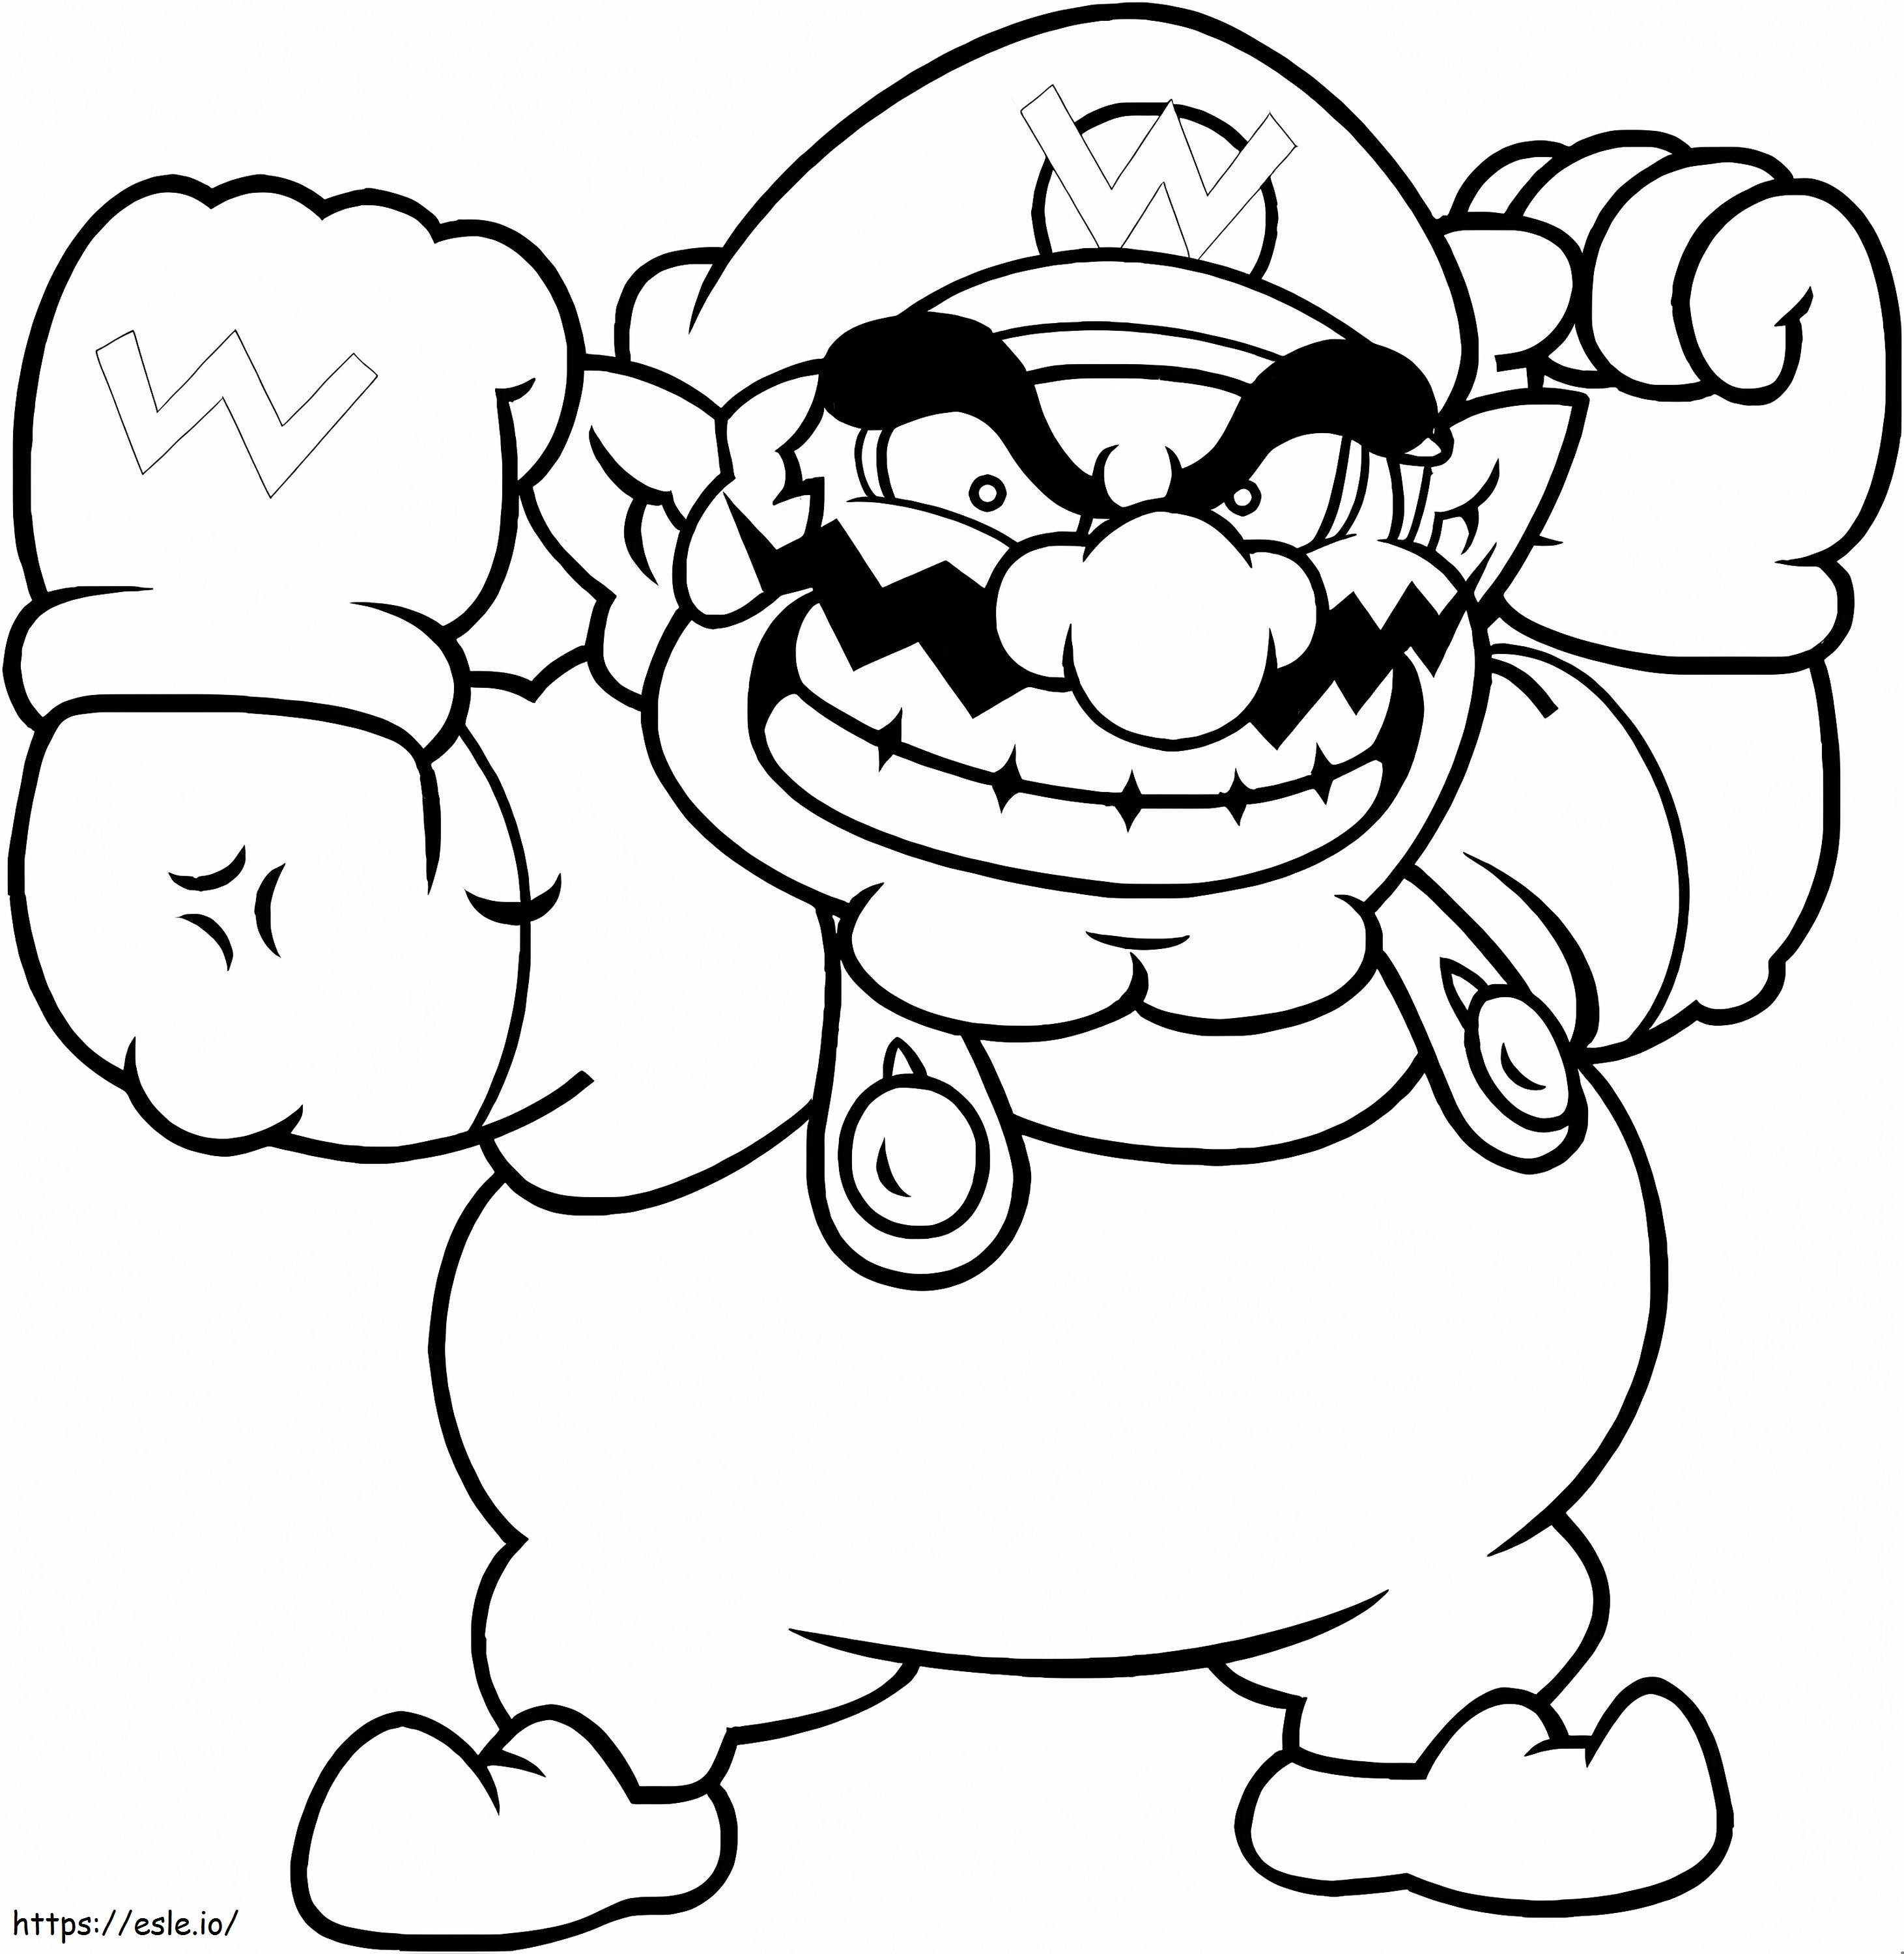 Wario From Super Mario coloring page